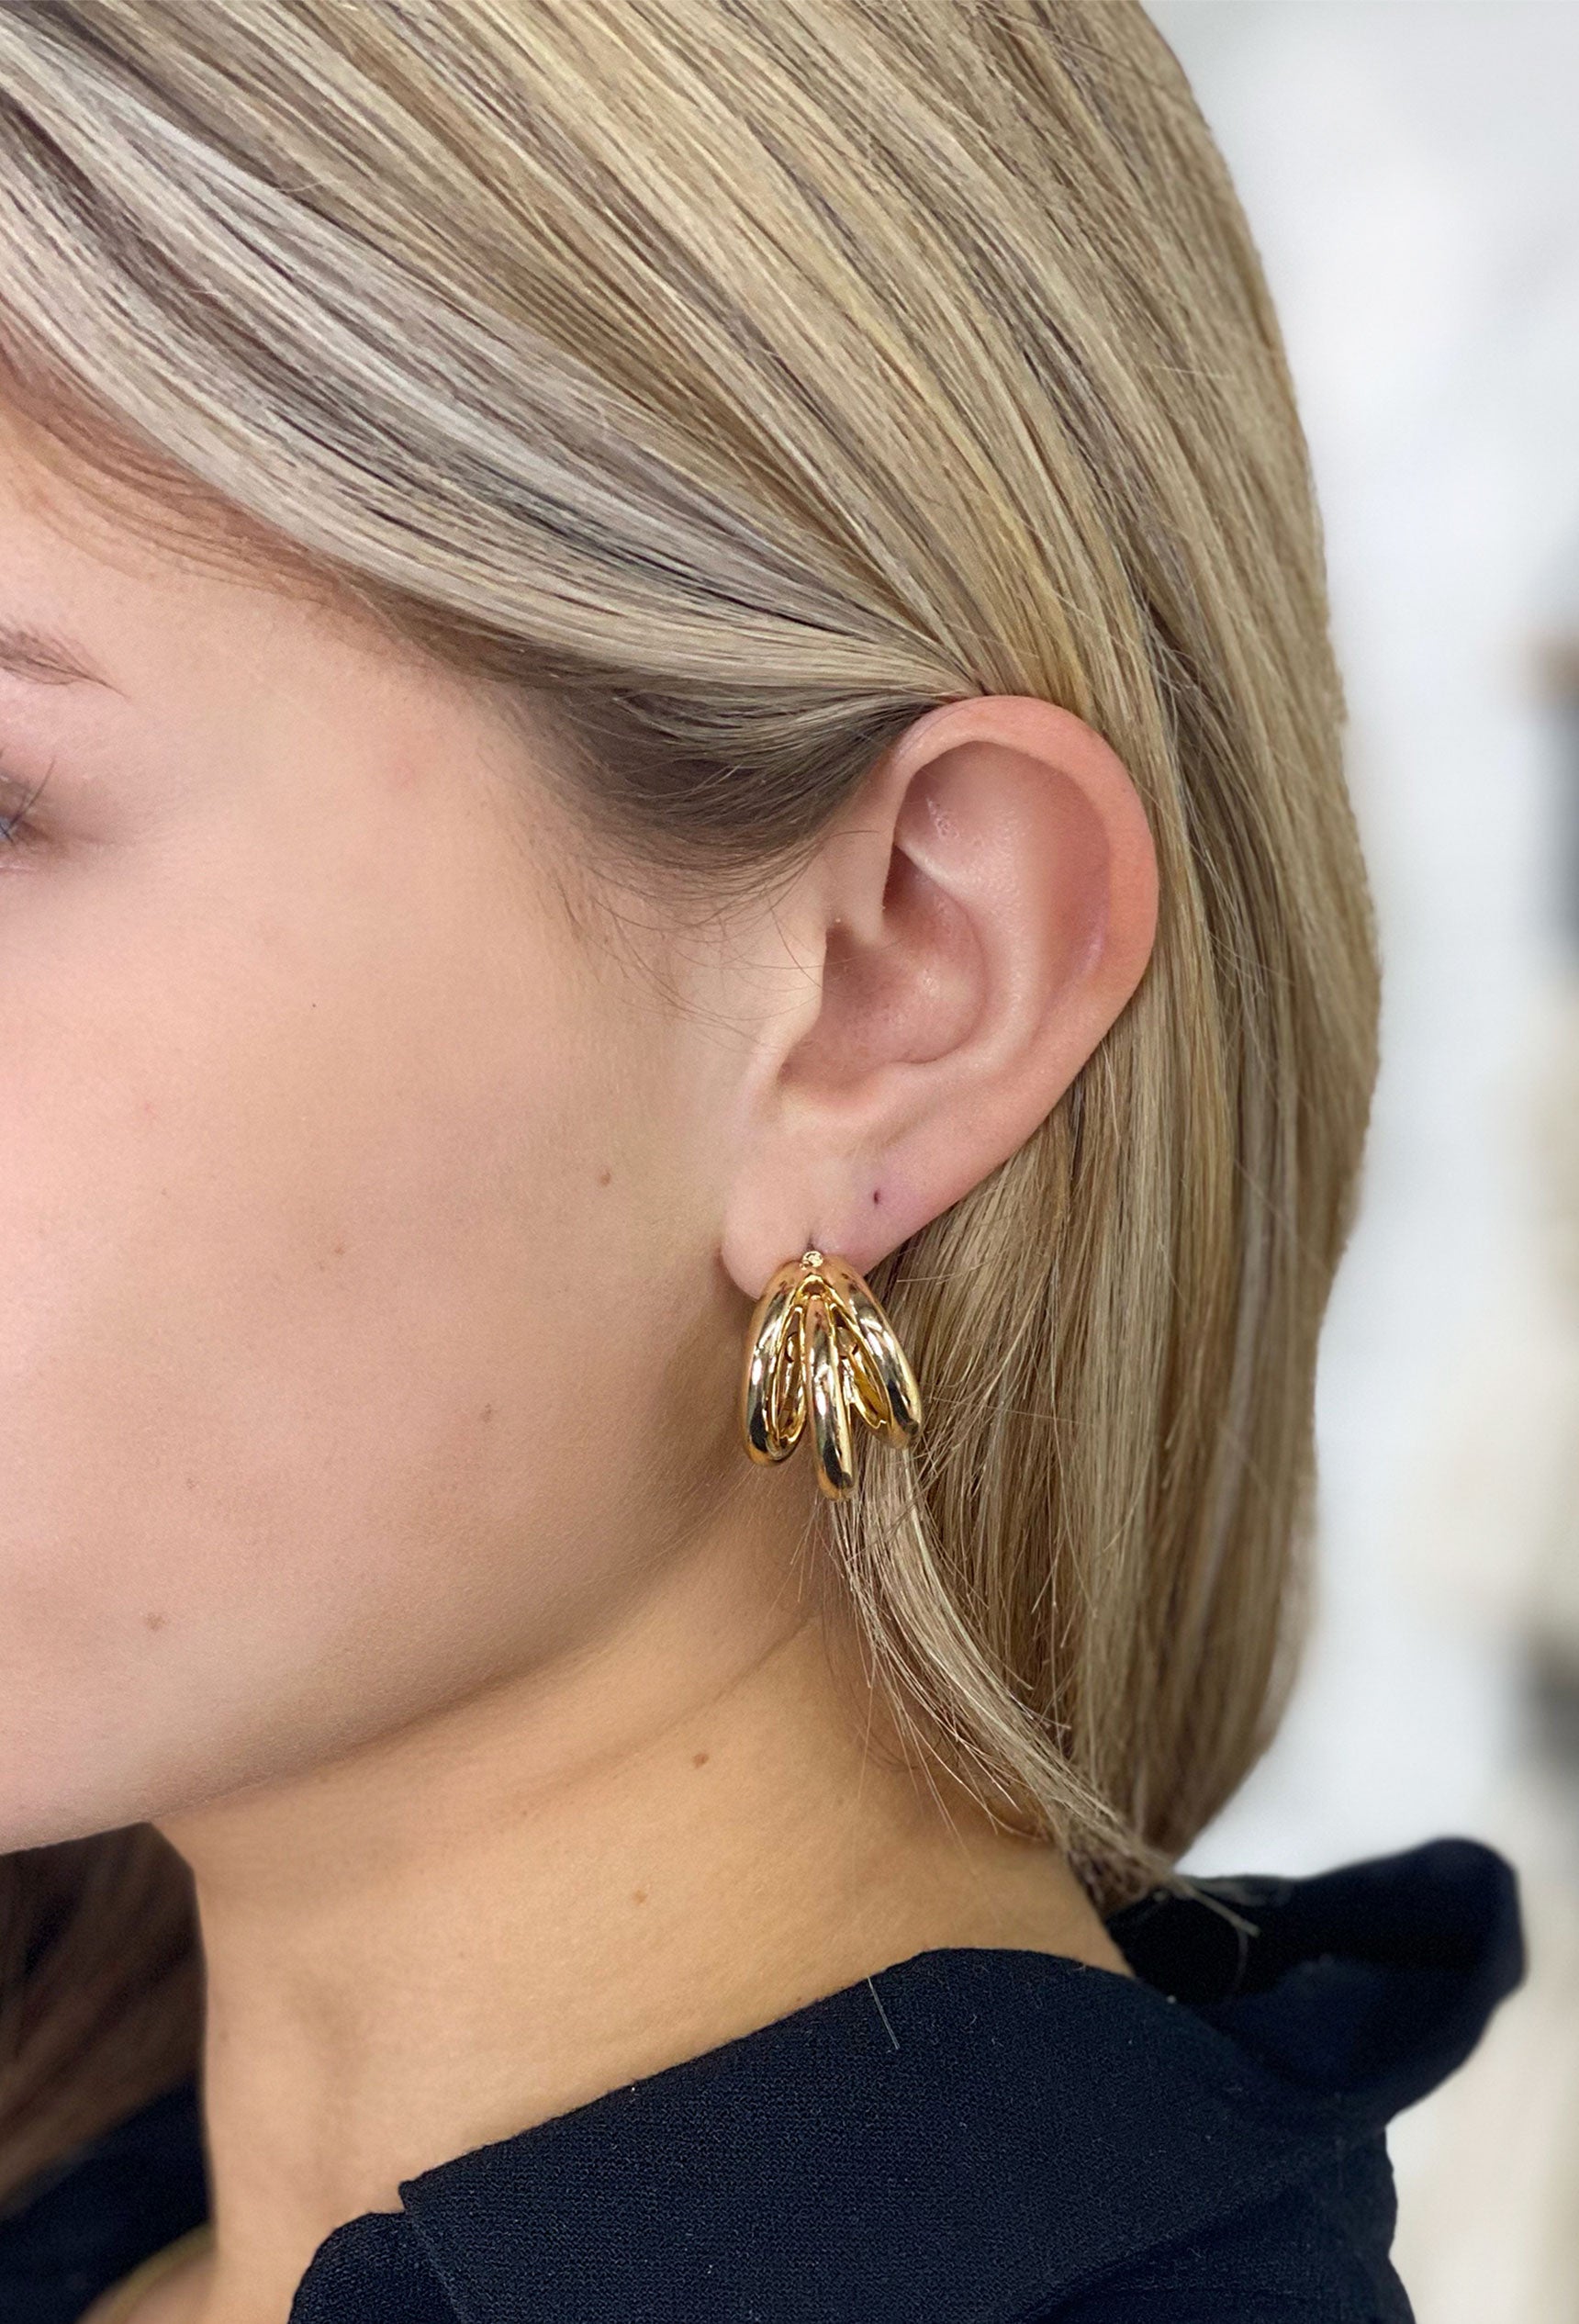 Wide Gold Hoop Earrings,flat Hoop Earrings, Thick Gold Hoops, 18k Gold  Filled Hoop,dainty Gold Hoops, Vintage Gold Hoop Earrings,gold Hoops - Etsy  | Dainty gold hoops, Large gold earrings, Hoop earrings